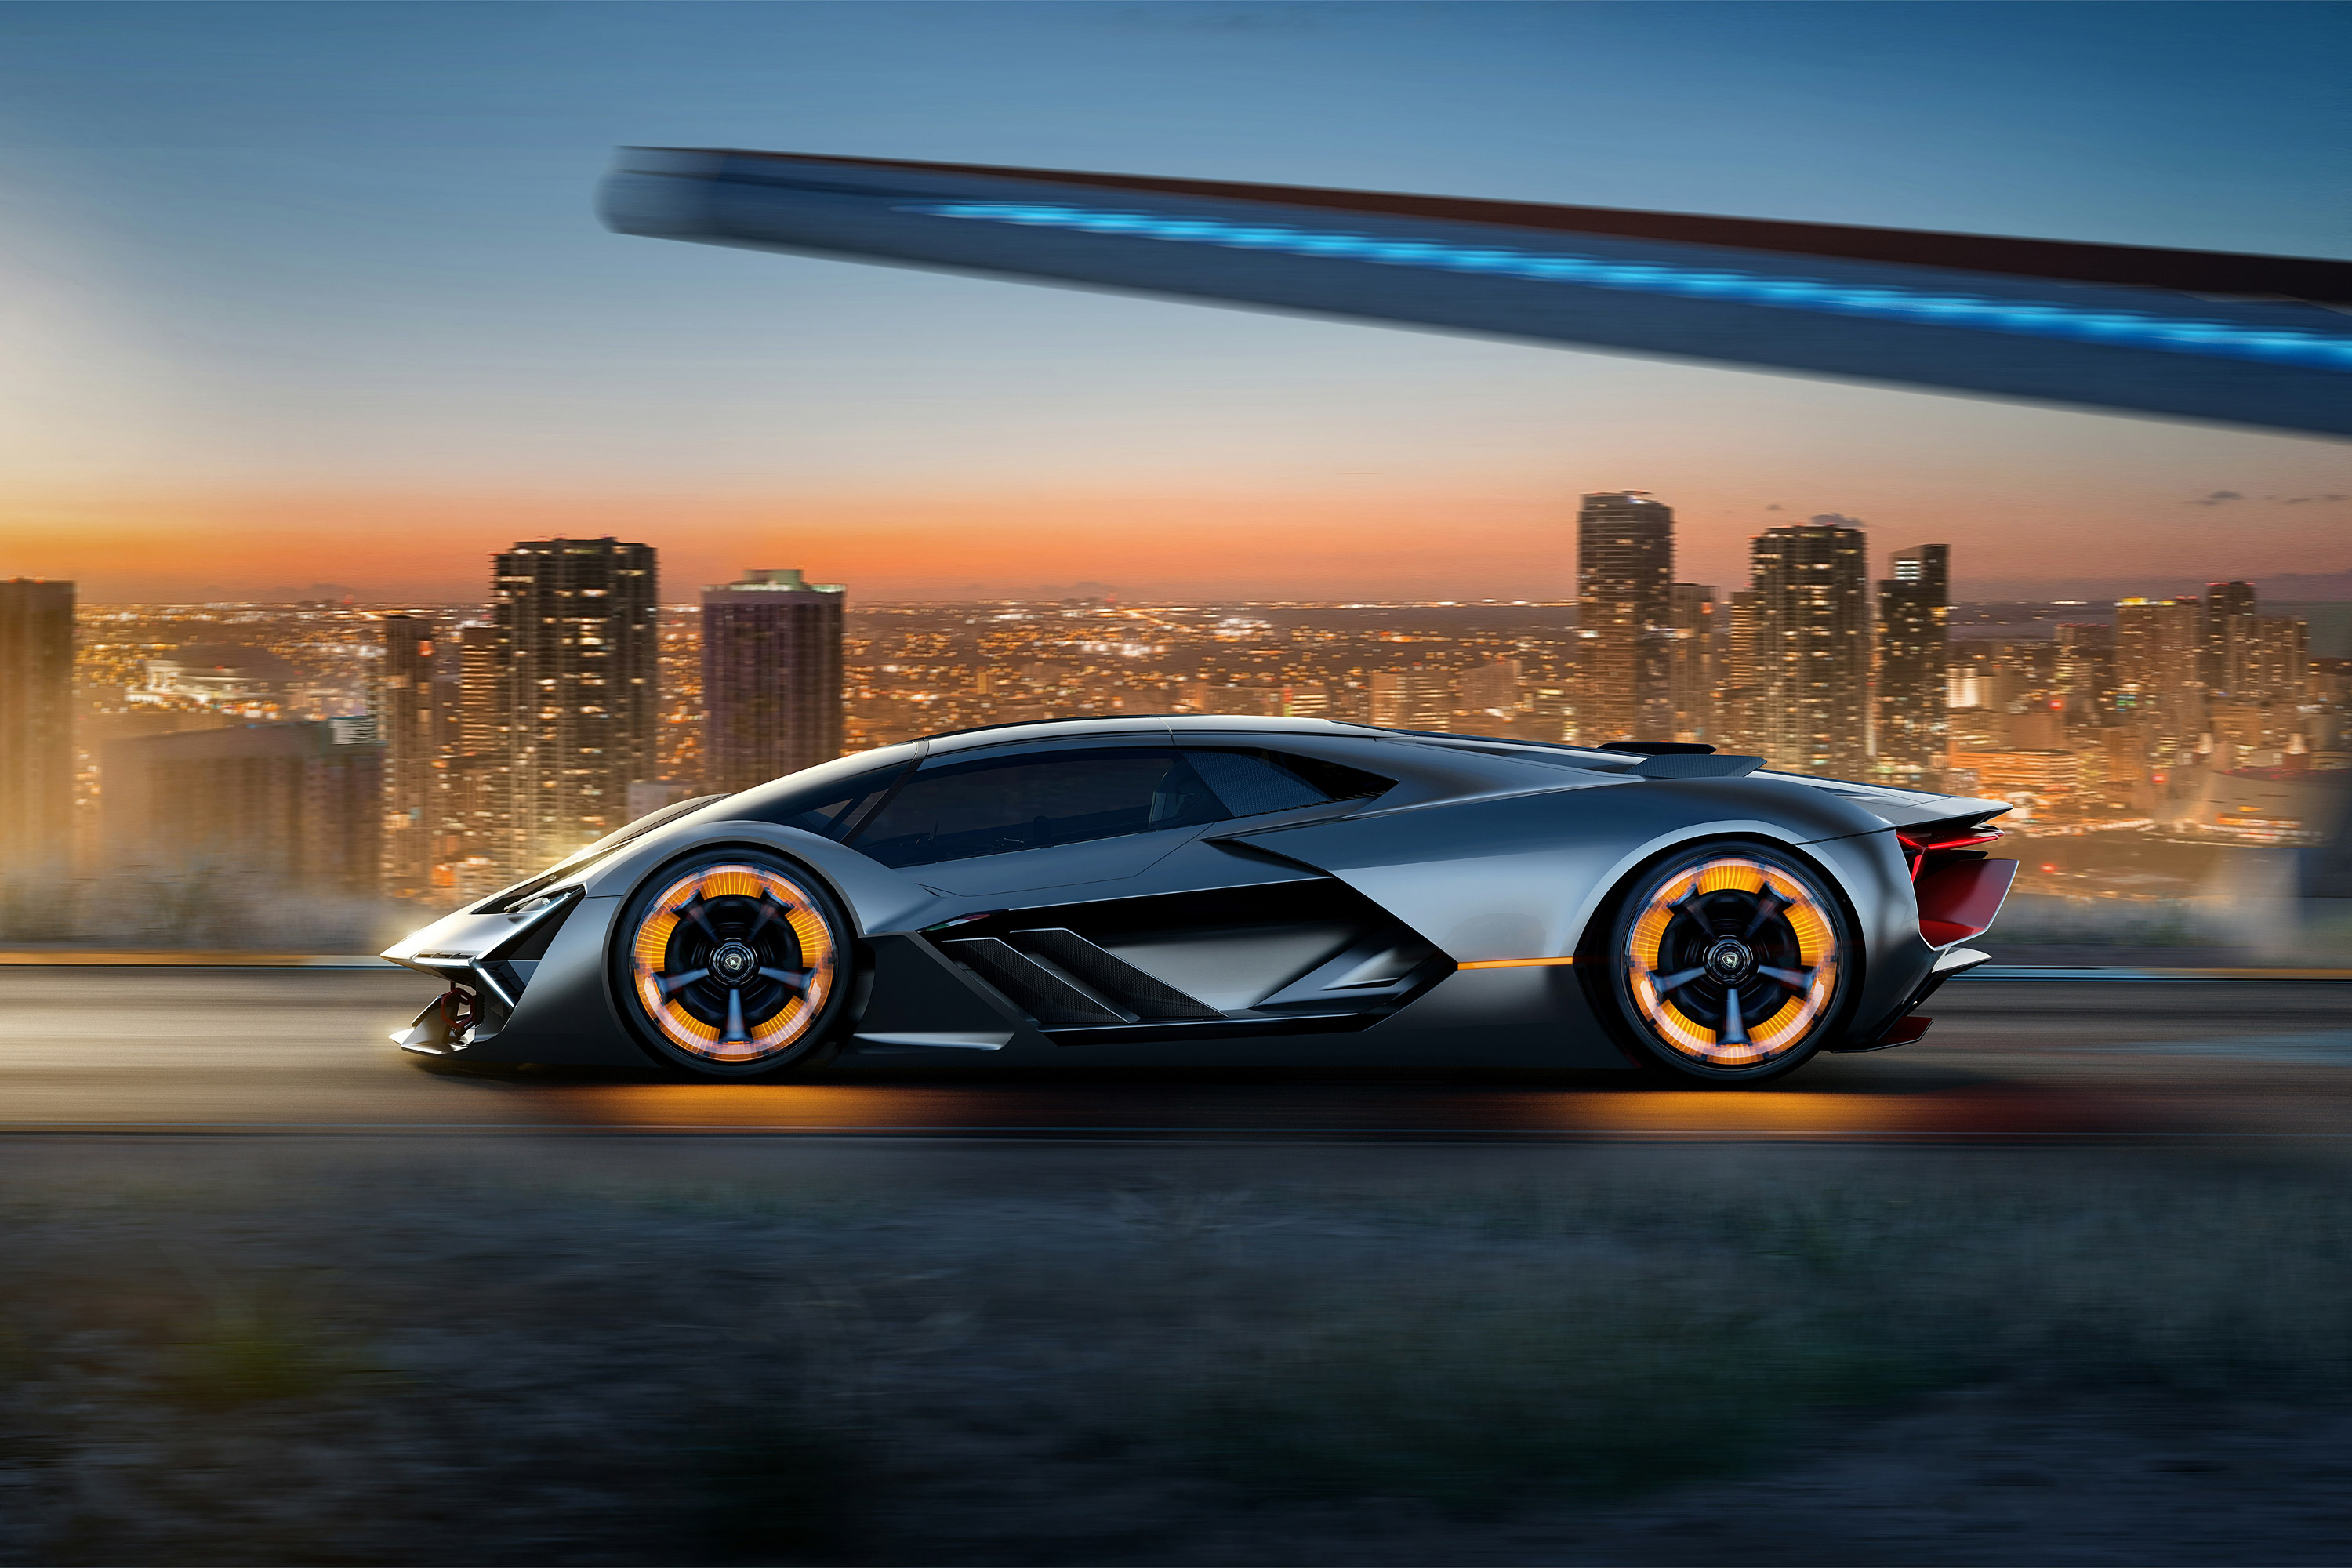  2017 Lamborghini Terzo Millennio Concept Wallpaper.